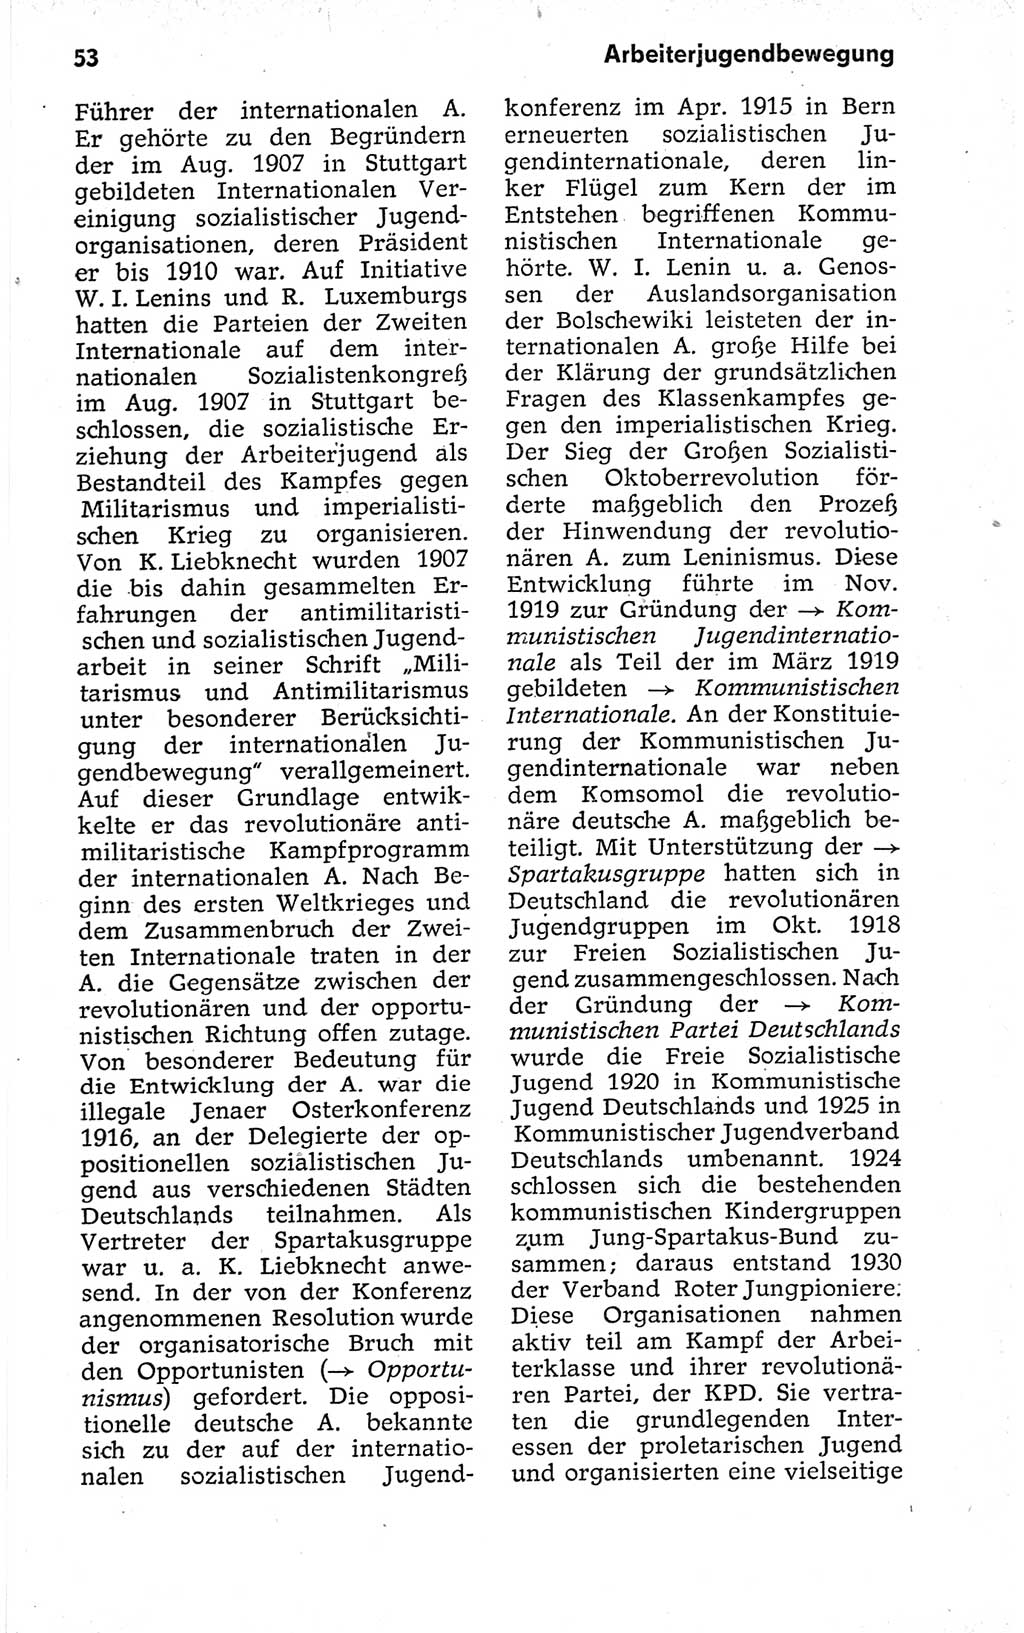 Kleines politisches Wörterbuch [Deutsche Demokratische Republik (DDR)] 1973, Seite 53 (Kl. pol. Wb. DDR 1973, S. 53)